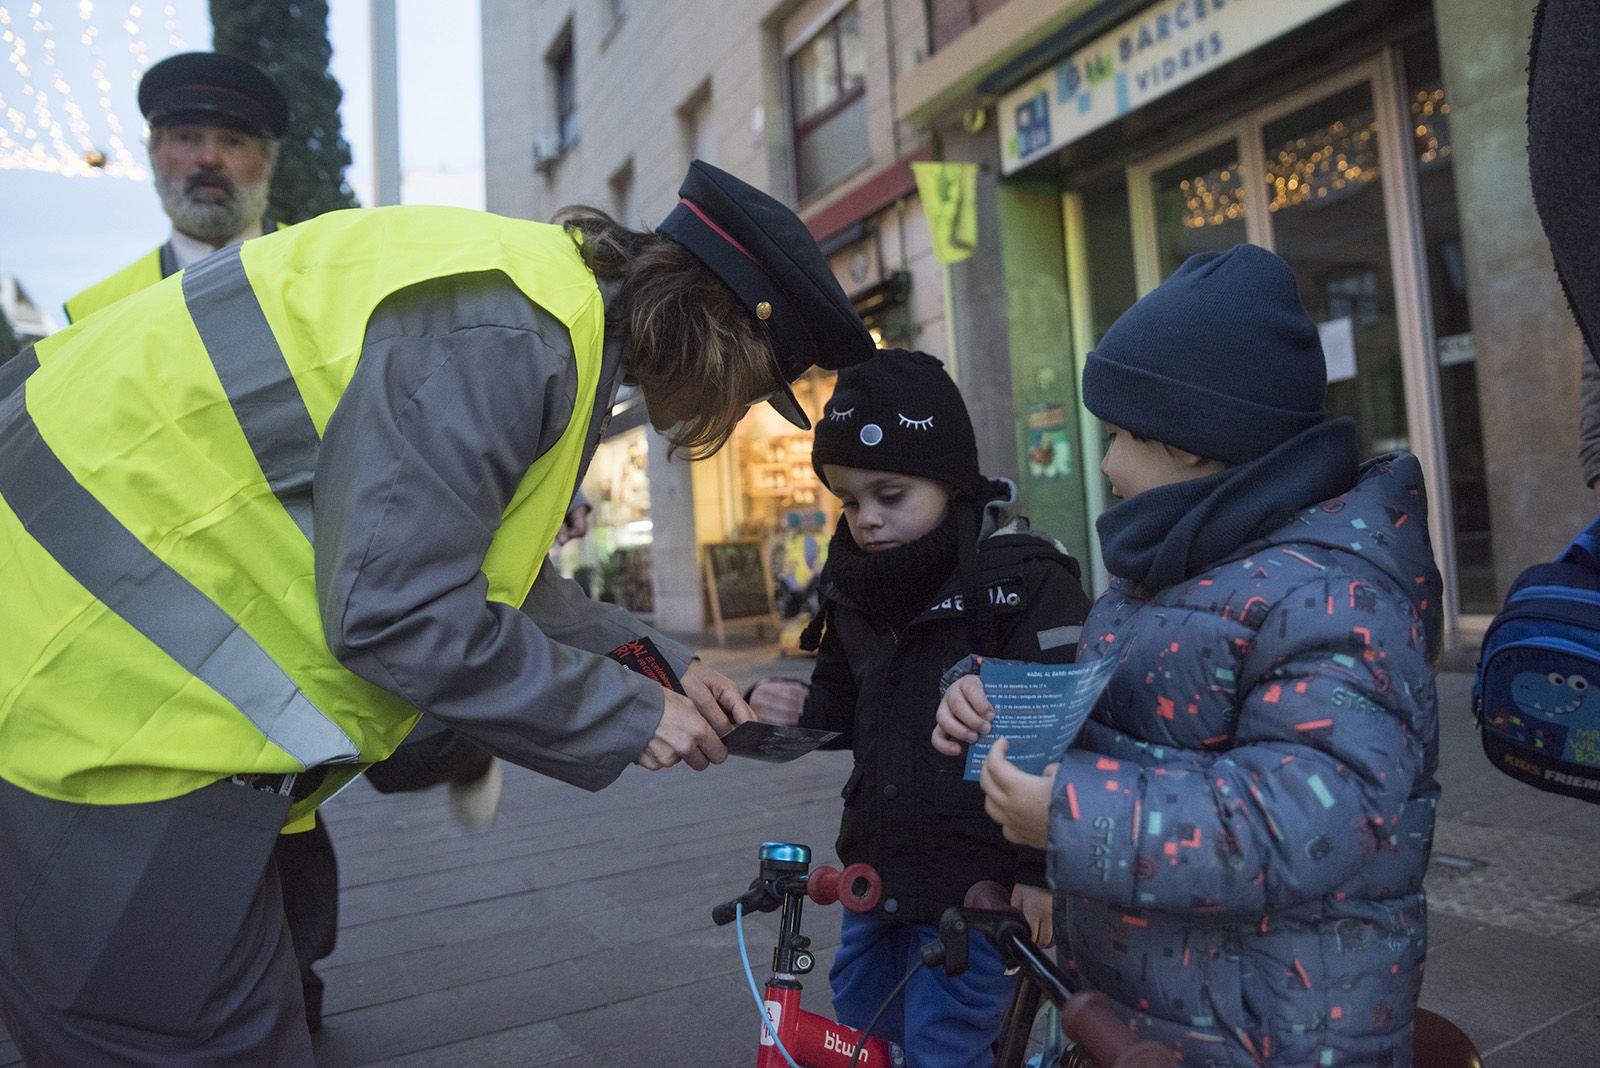 Personatges itinerants de Nadal a l'Avinguda Cerdanyola. FOTO: Bernat Millet.